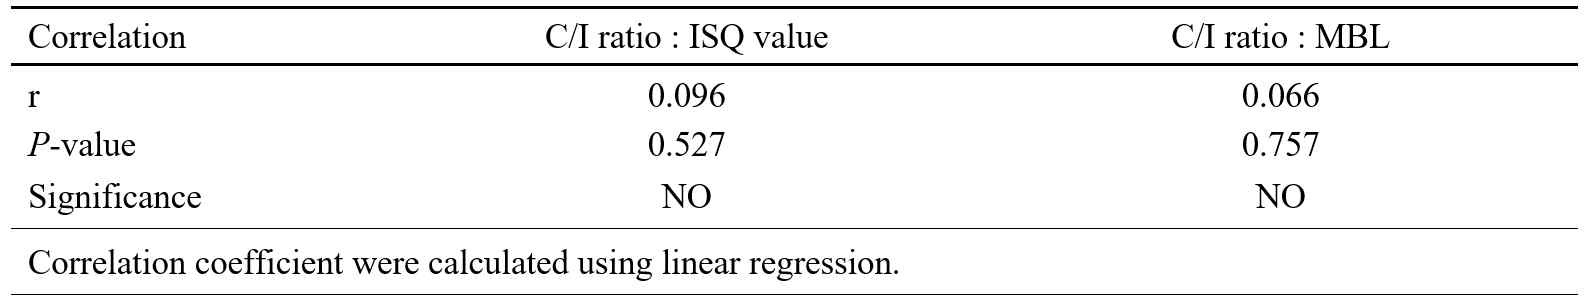 Correlations between C/I ratio : ISQ value and C/I ratio : MBL